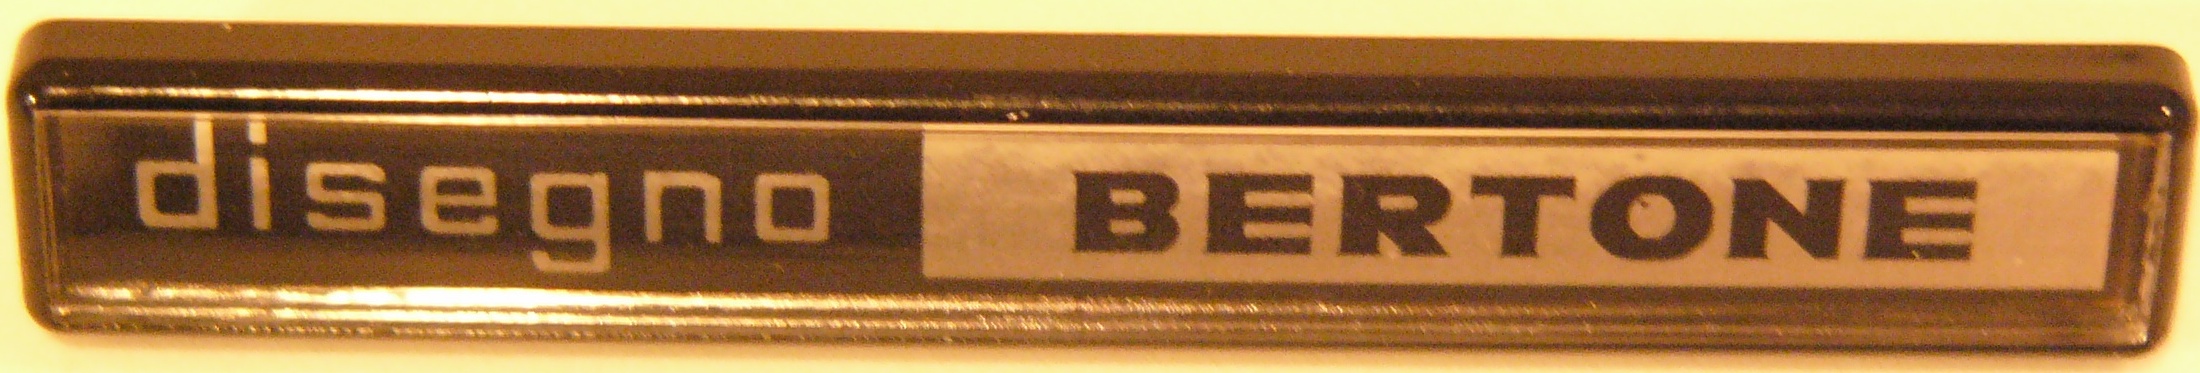 Bertone badge